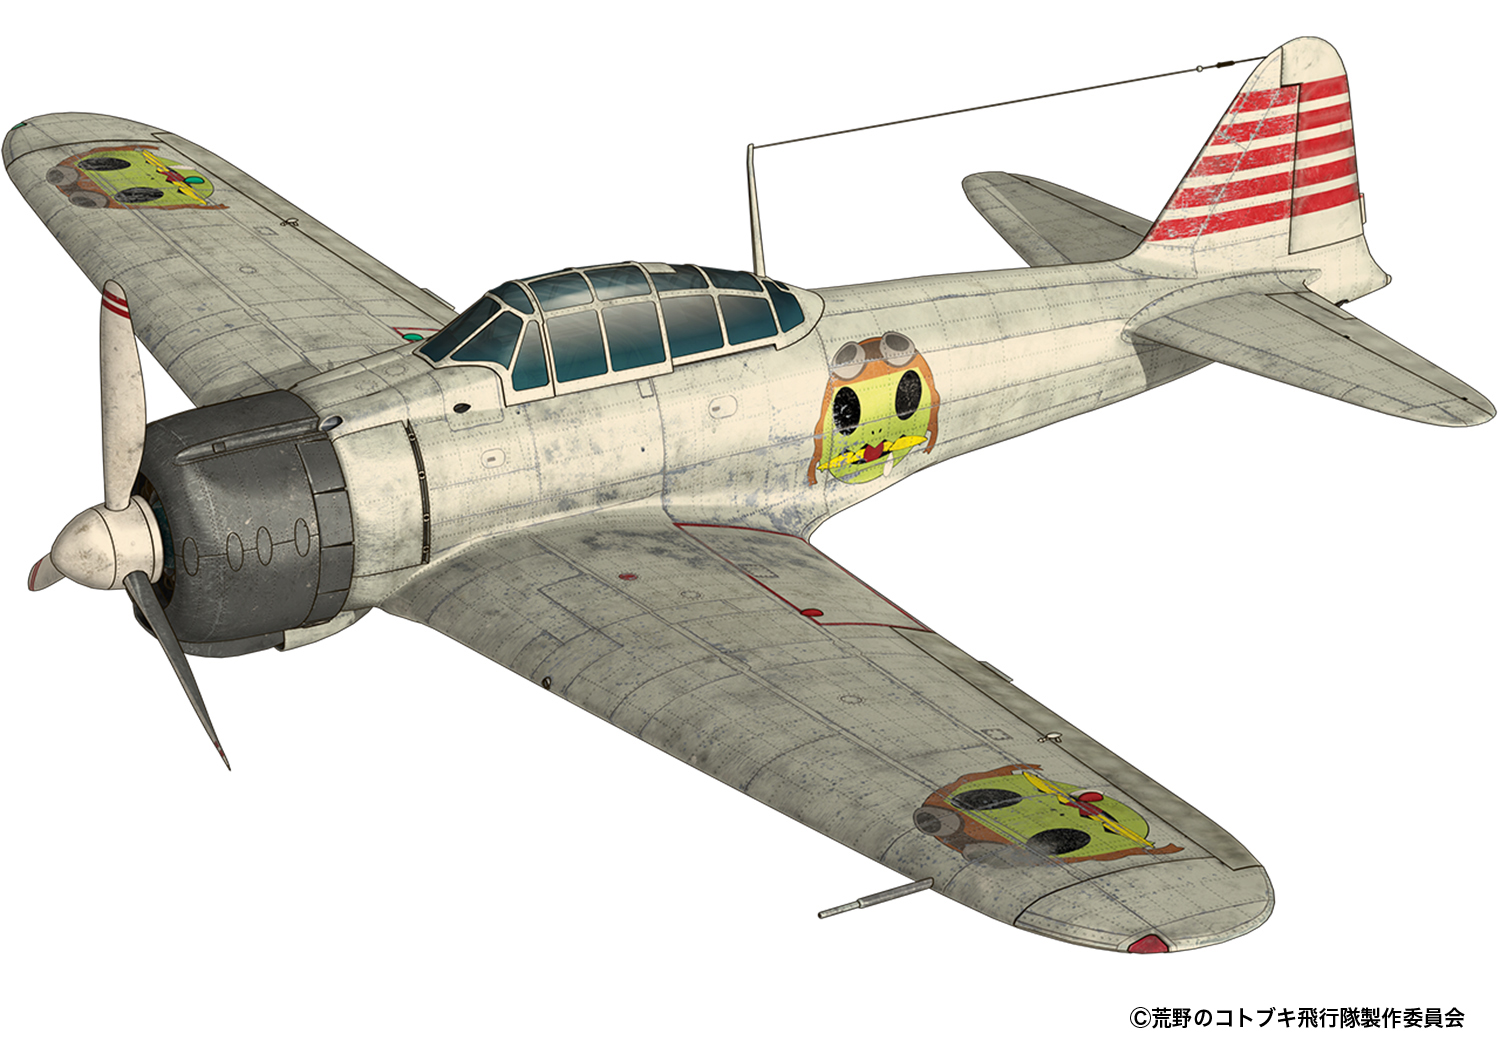 PLEX 1/72 Zero Fighter Type 21 from The Magnificent KOTOBUKI